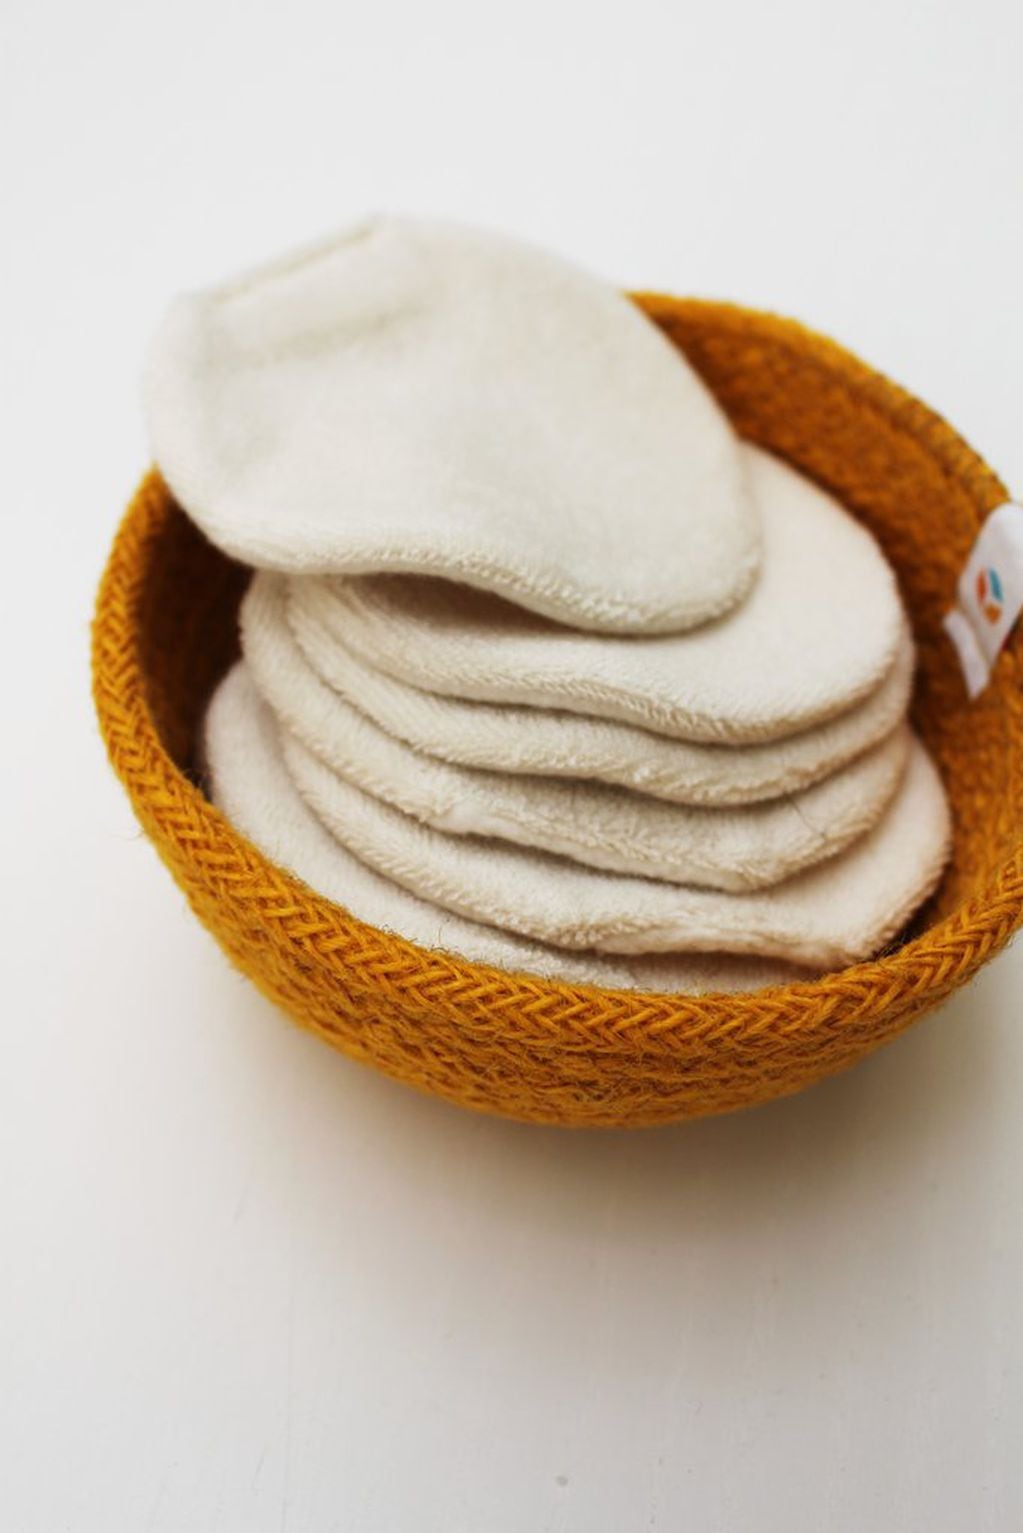 Los discos desmaquillantes son reemplazados por discos de toalla en algodón o tejidos en hilo orgánicos. Productos que se lavan y reutilizan a diario.